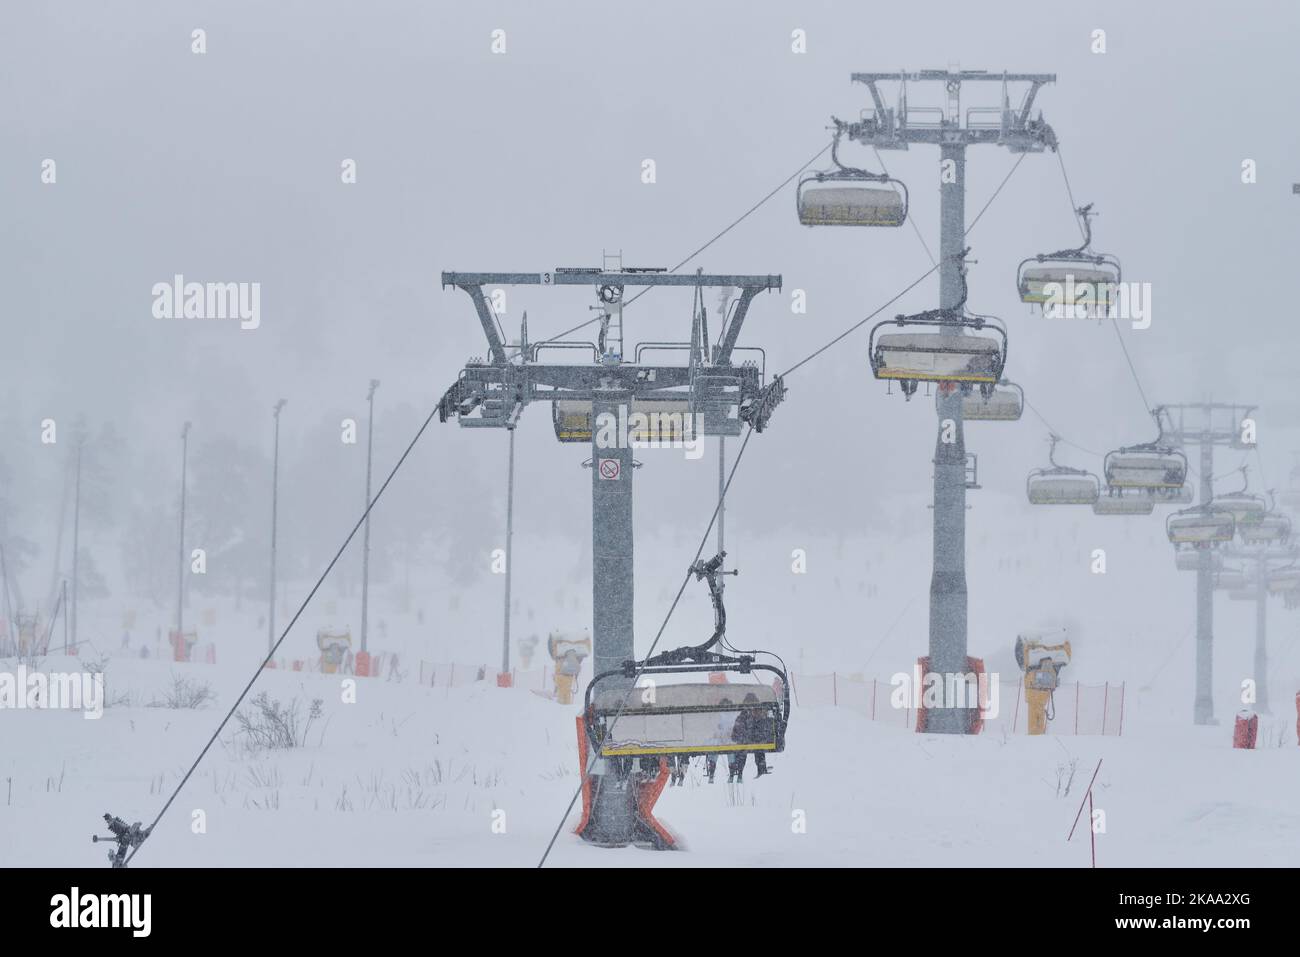 Ski lift in the ski resort in the snowfall. Stock Photo